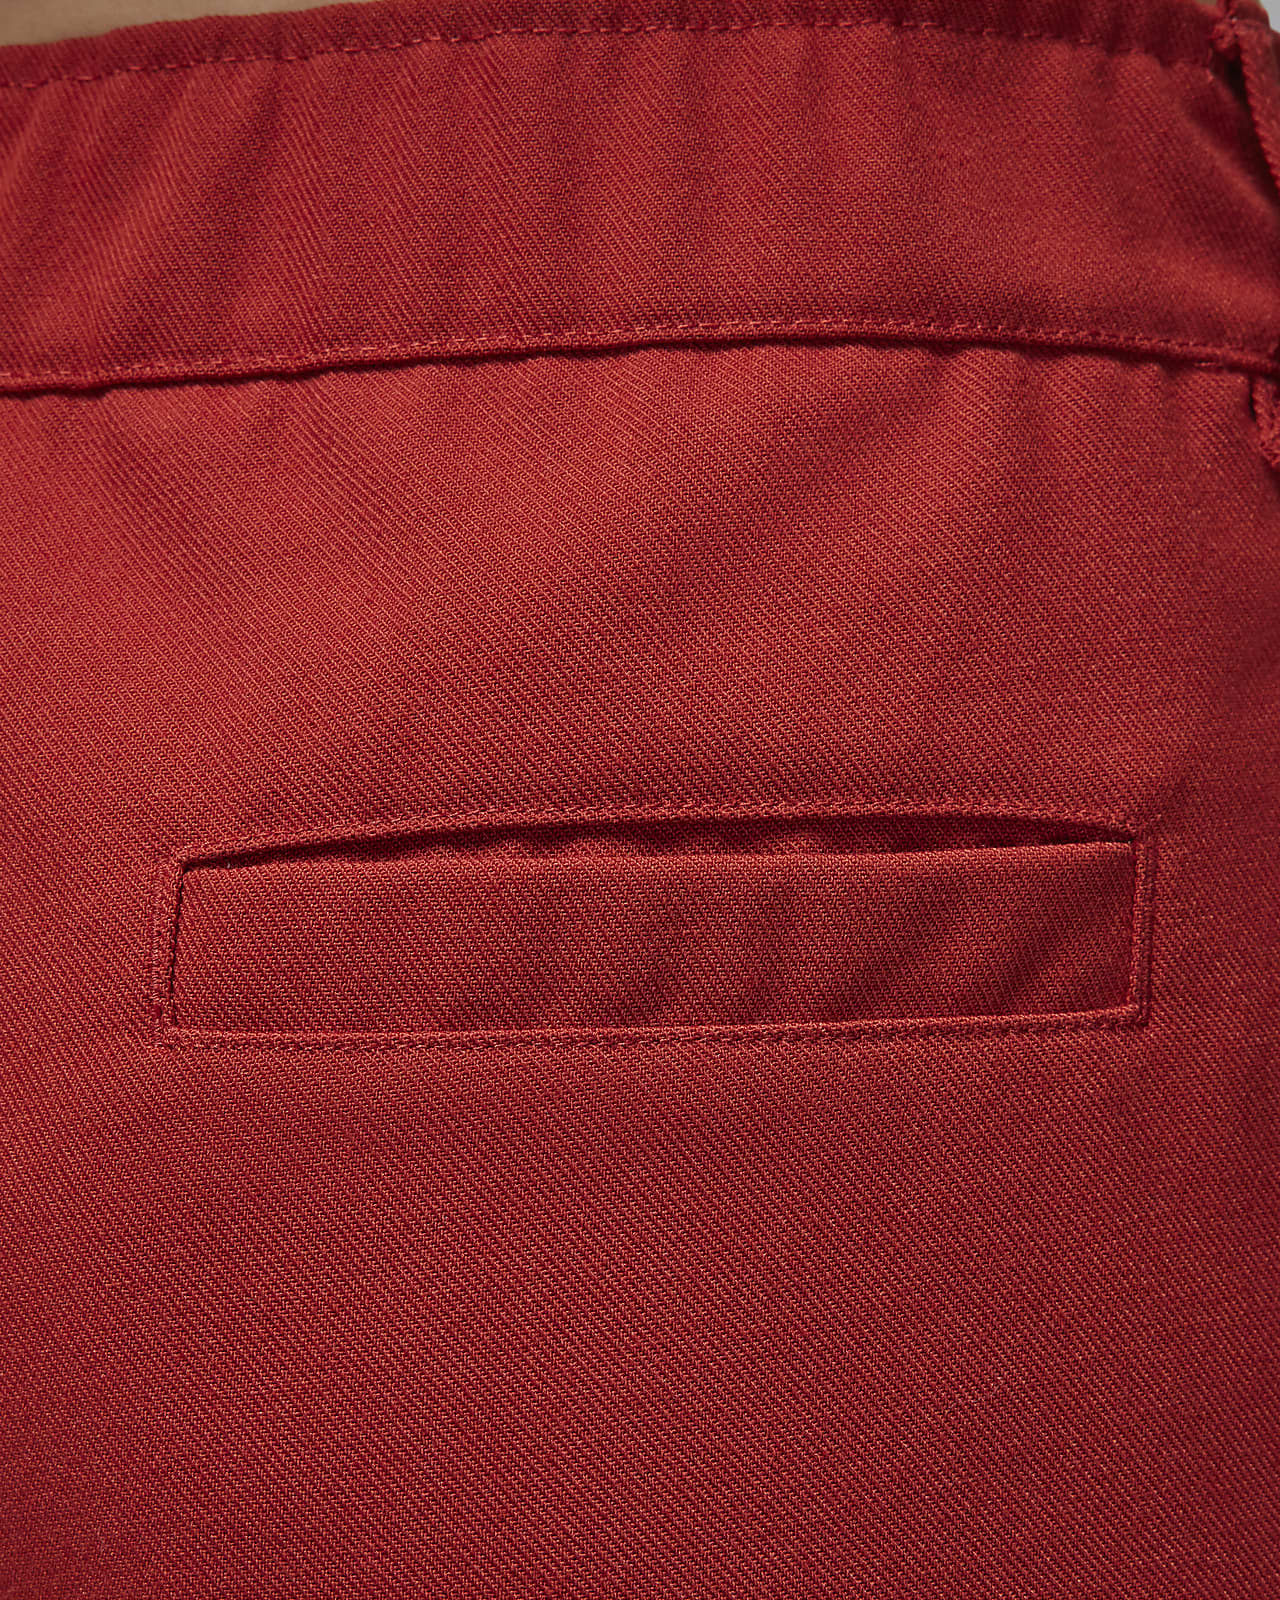 Pants de tejido Woven para mujer Jordan. Nike MX